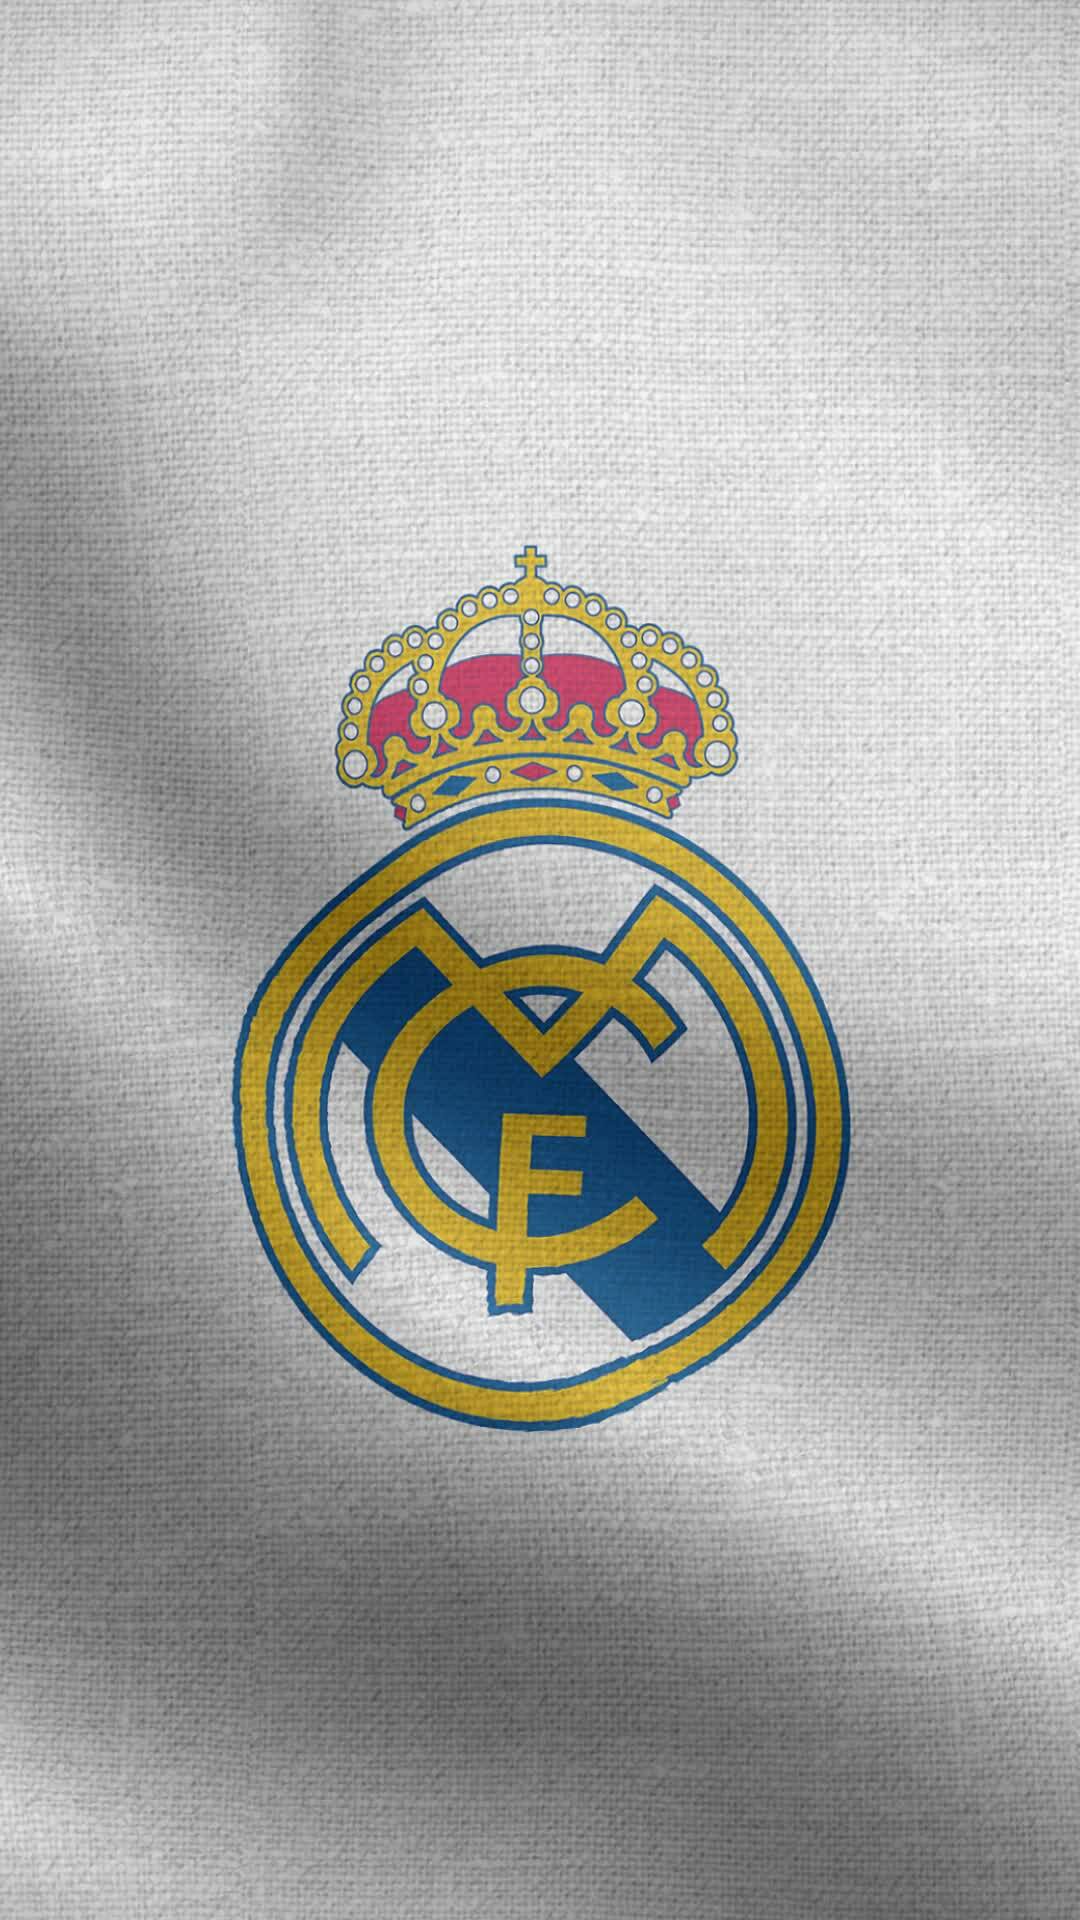 45+] Real Madrid Poster 2023 Wallpapers - WallpaperSafari